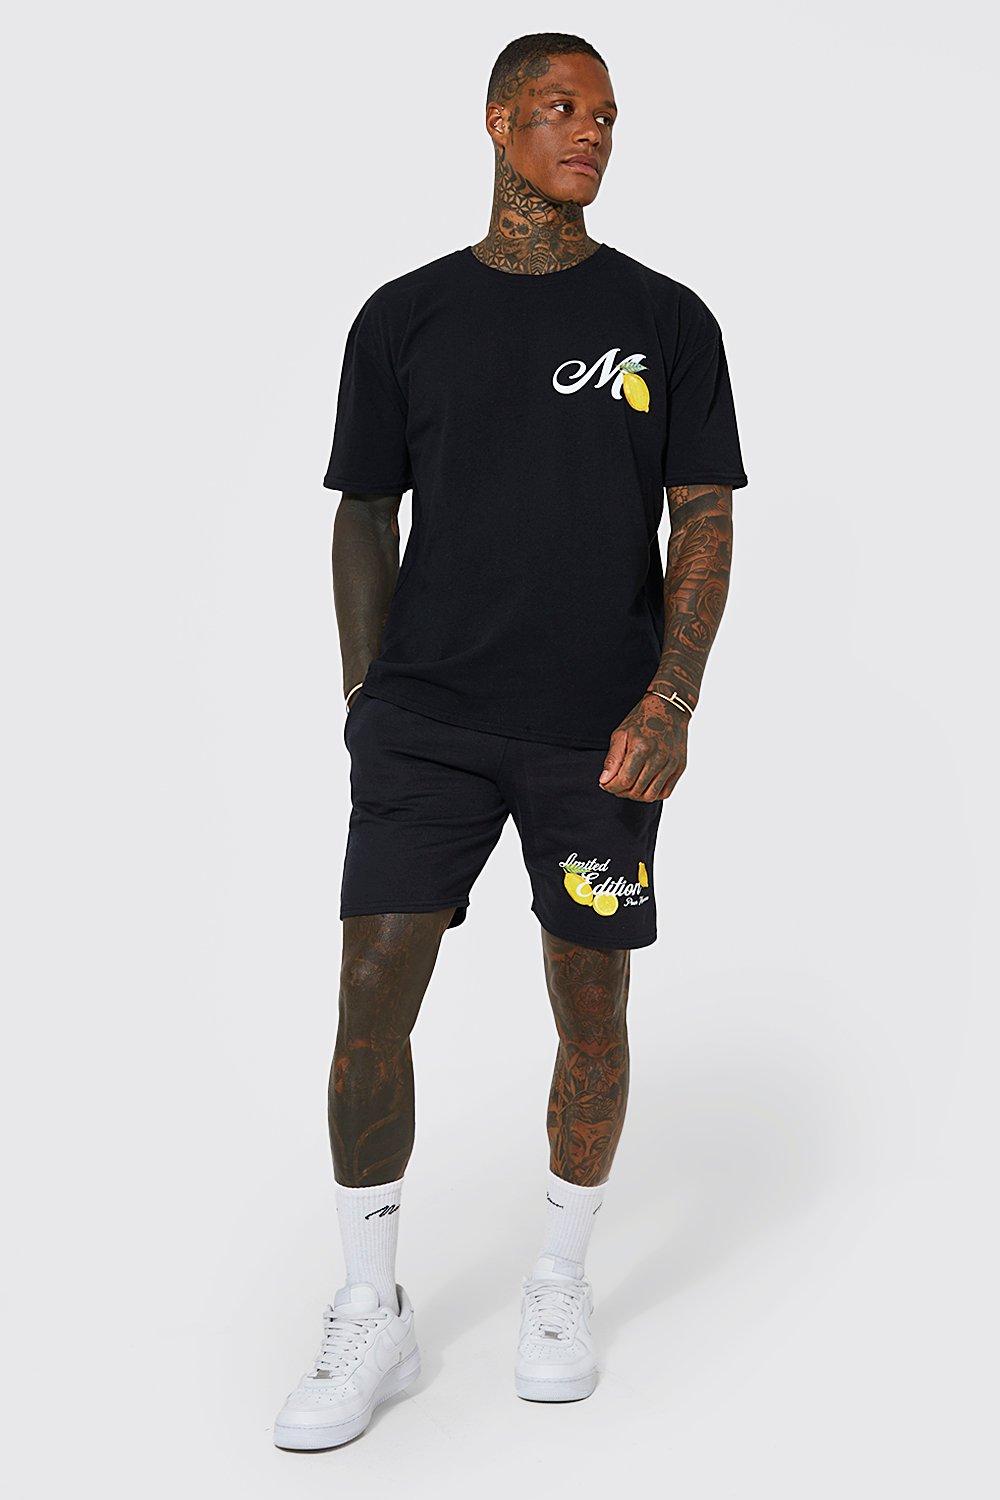 mens black oversized limited edt t-shirt and short set, black